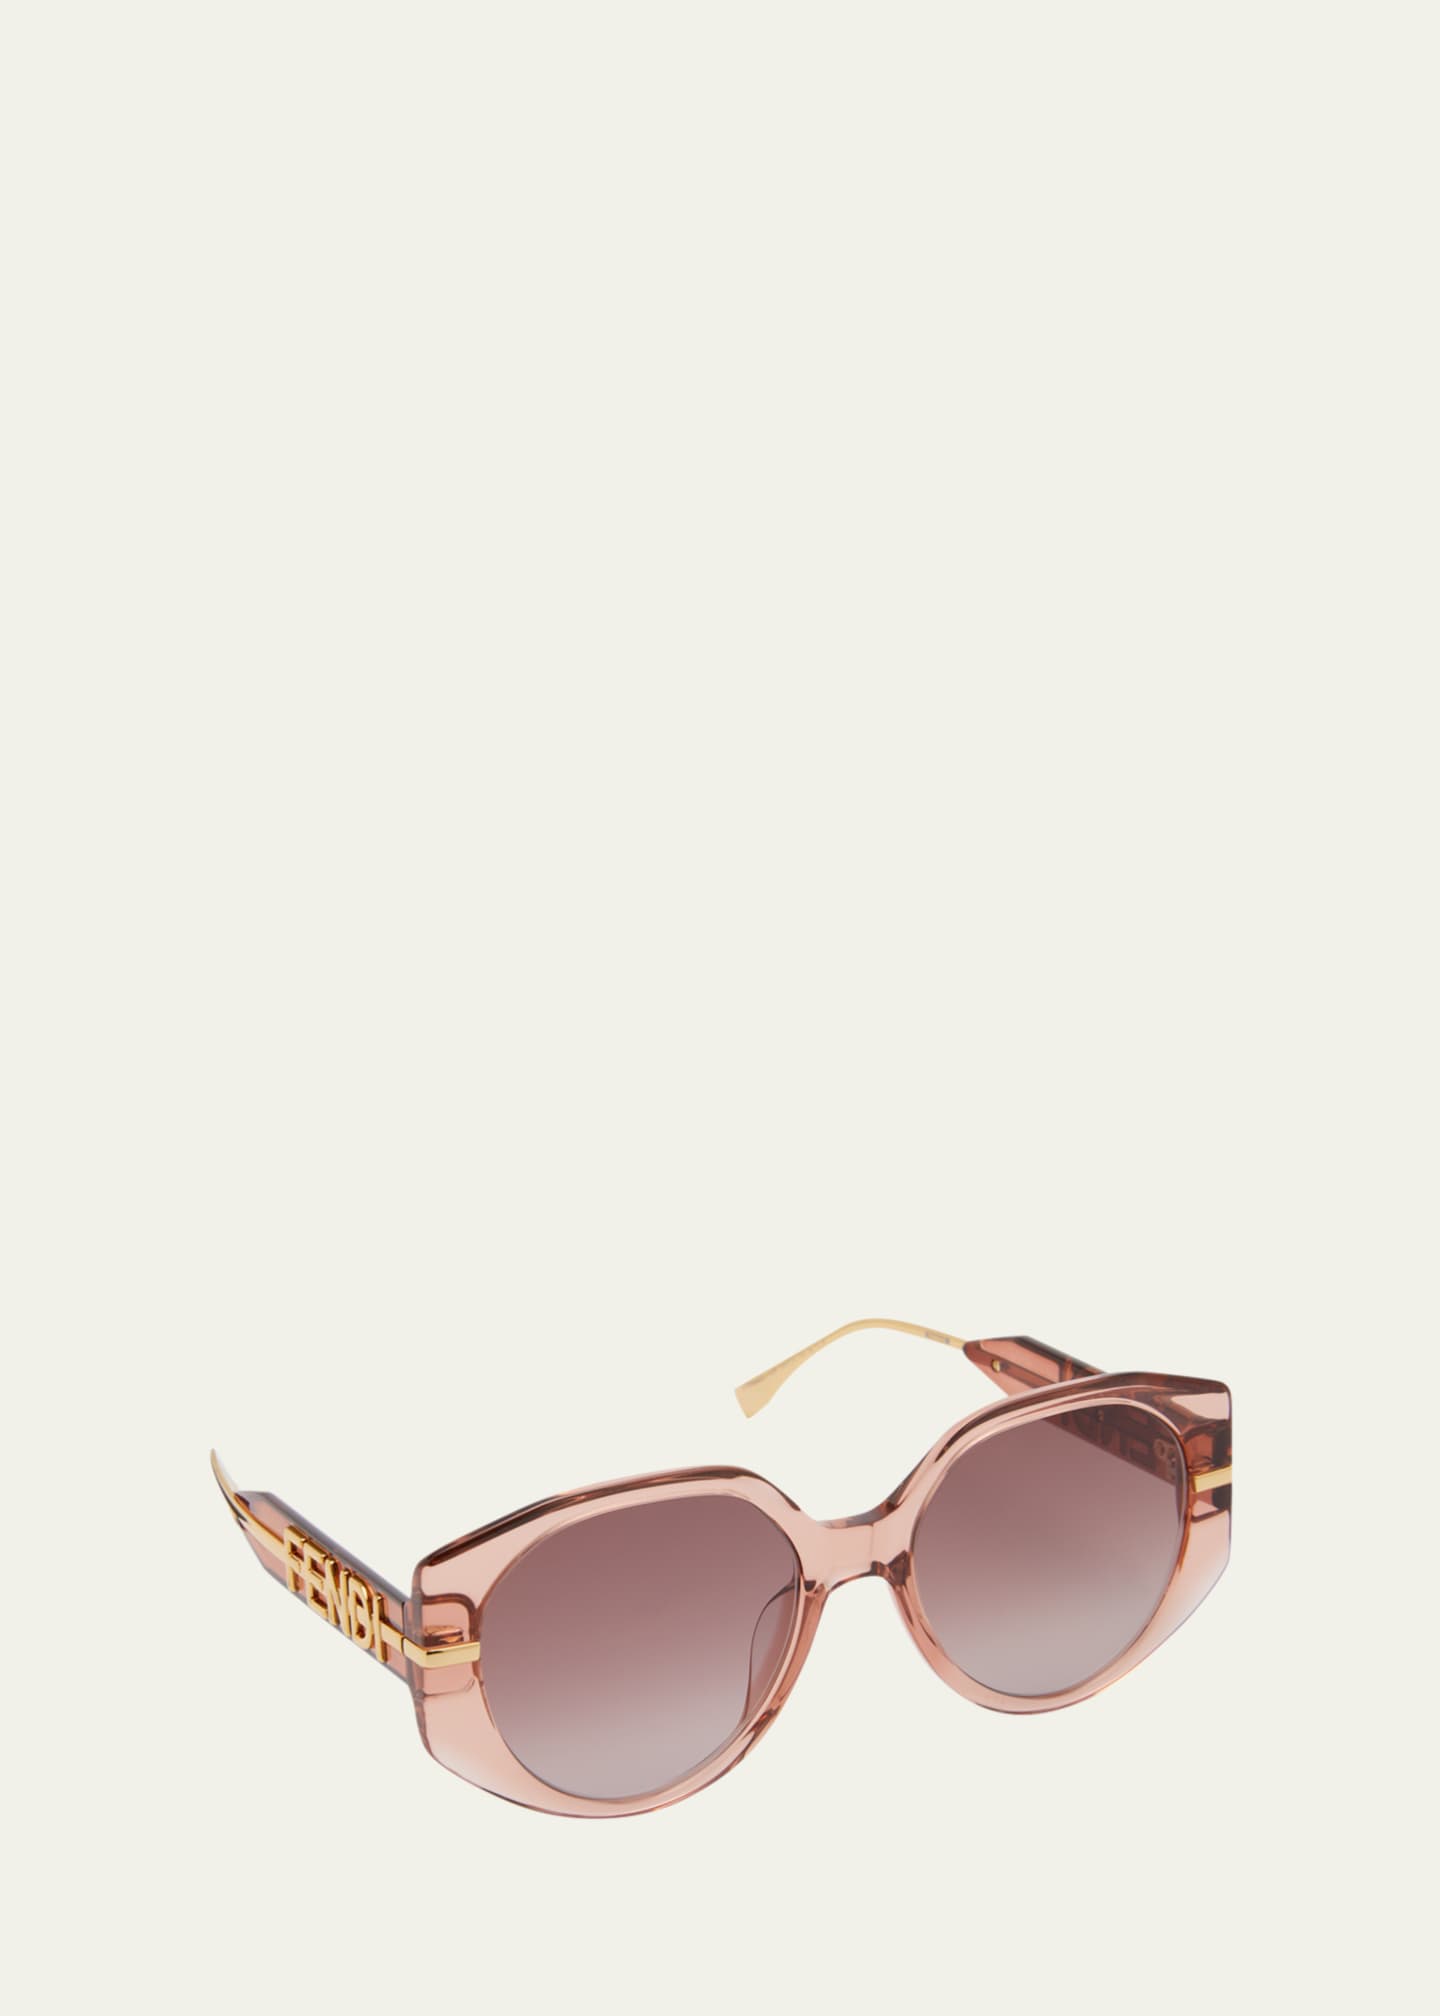 Fendi, Accessories, Fendi Sunglasses And Case